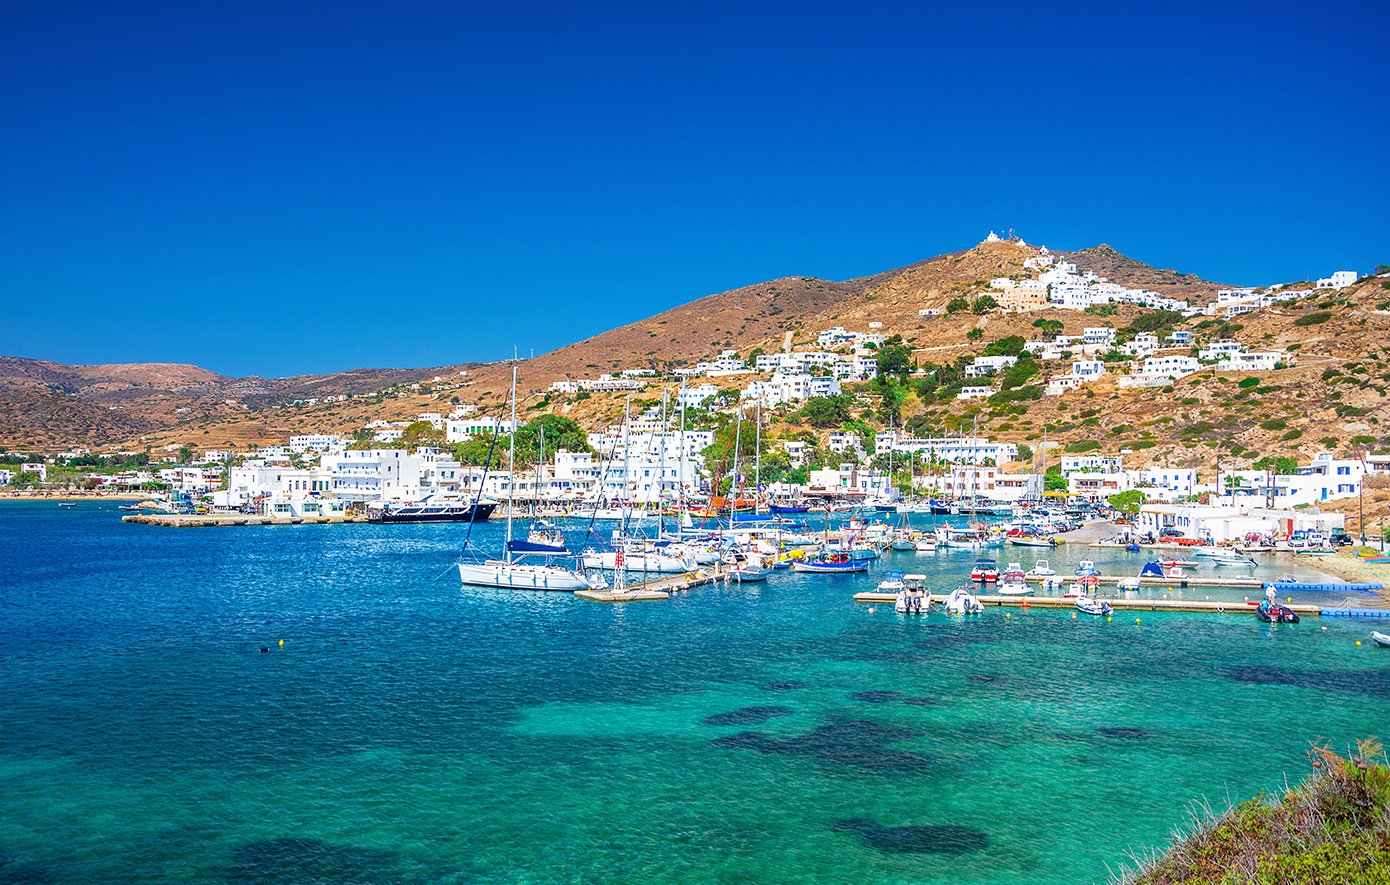 Το ελληνικό νησί που είναι ιδανικό για τα ζευγάρια, σύμφωνα με τους βρετανικούς Times